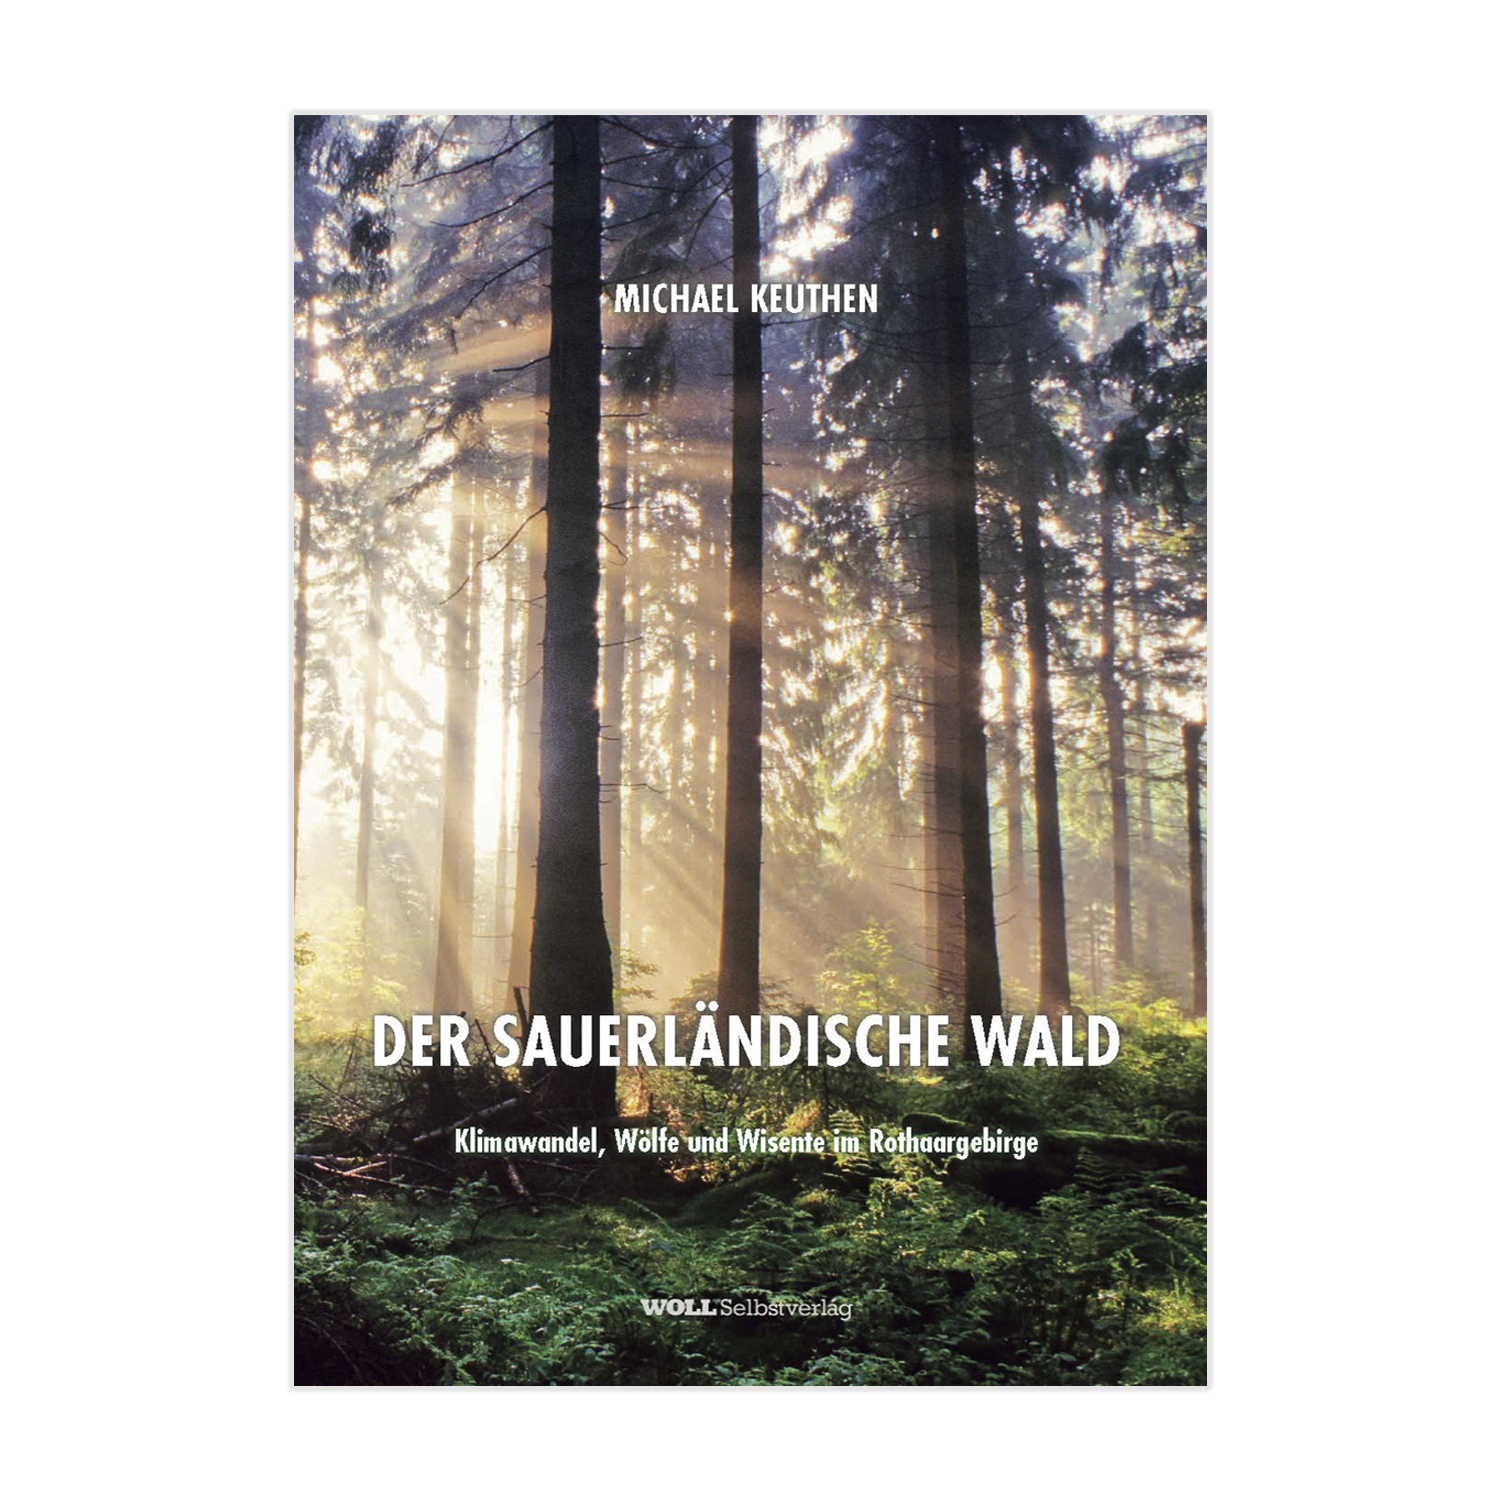 Der Sauerländische Wald – Klimawandel, Wölfe und Wisente im Rothaargebirge (Michael Keuthen)